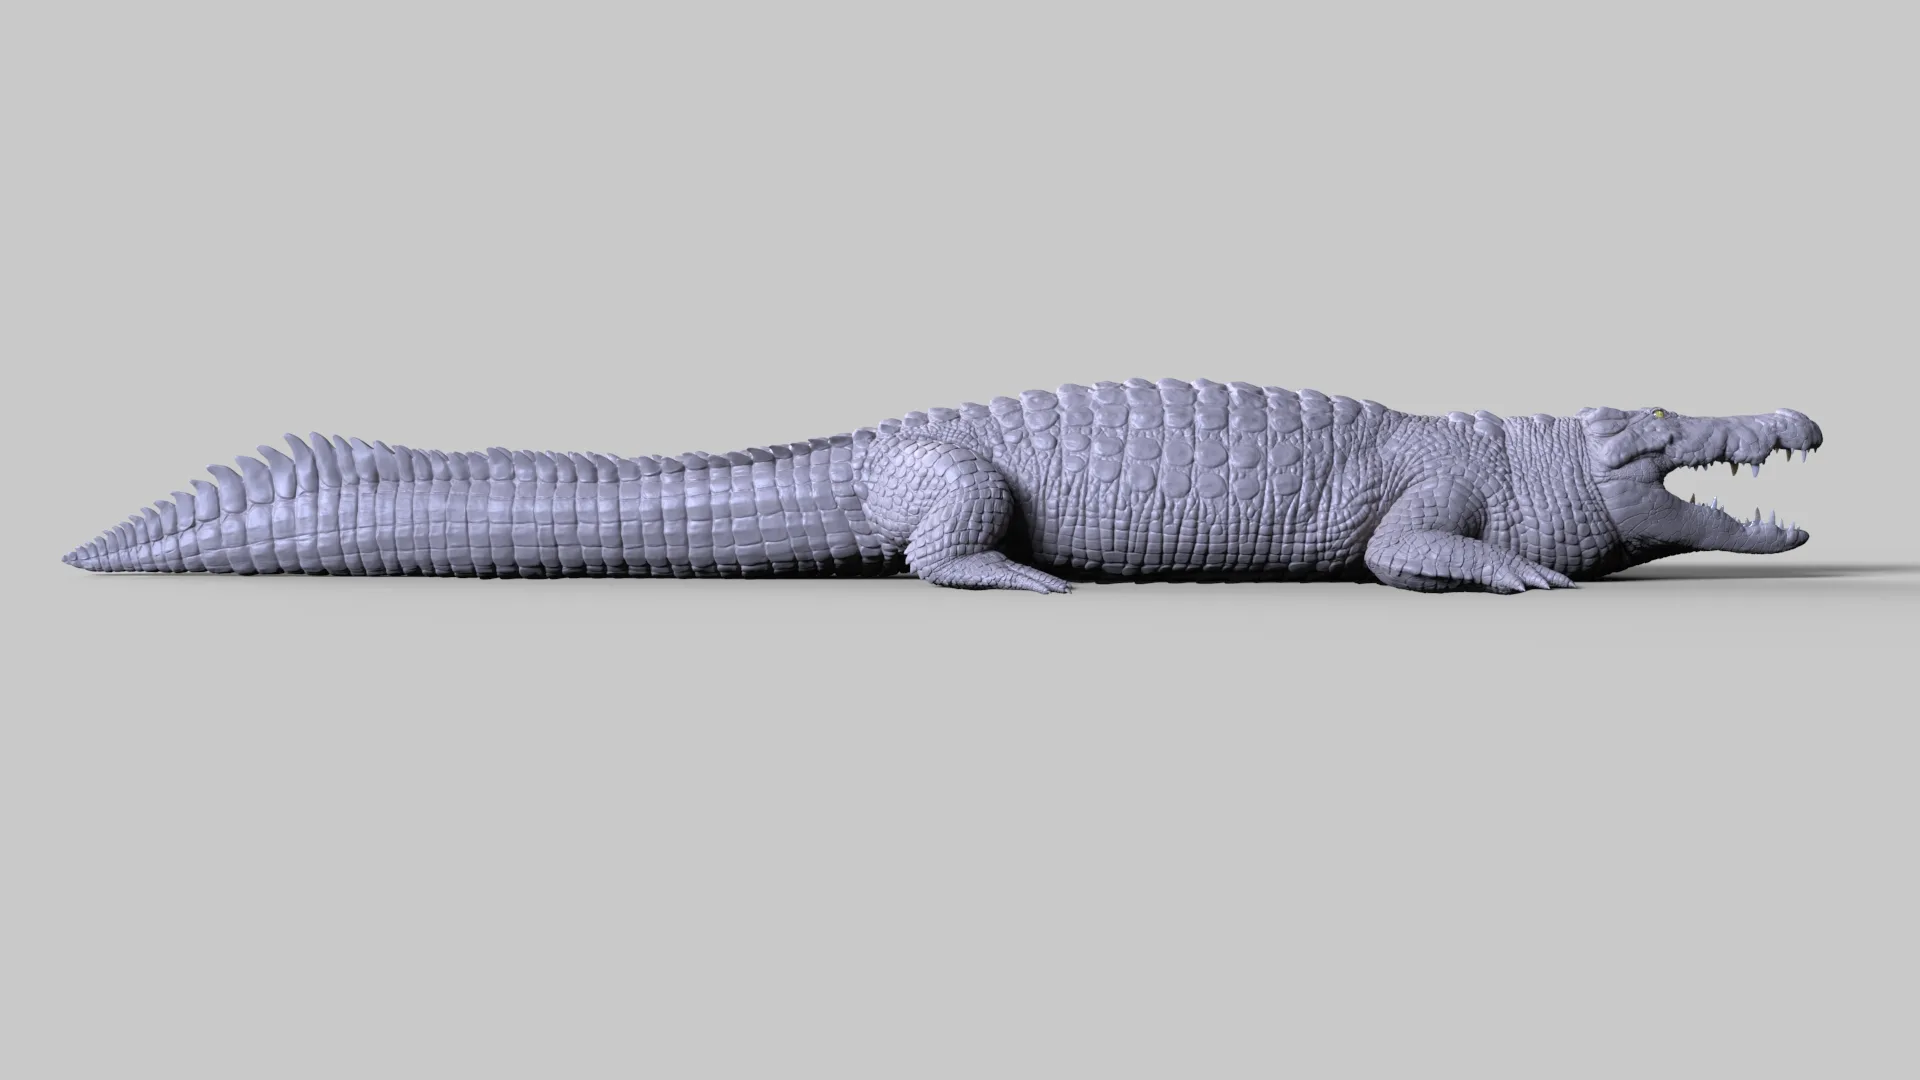 Production Quality Nile Crocodile 3D Model & ZBrush Sculpt